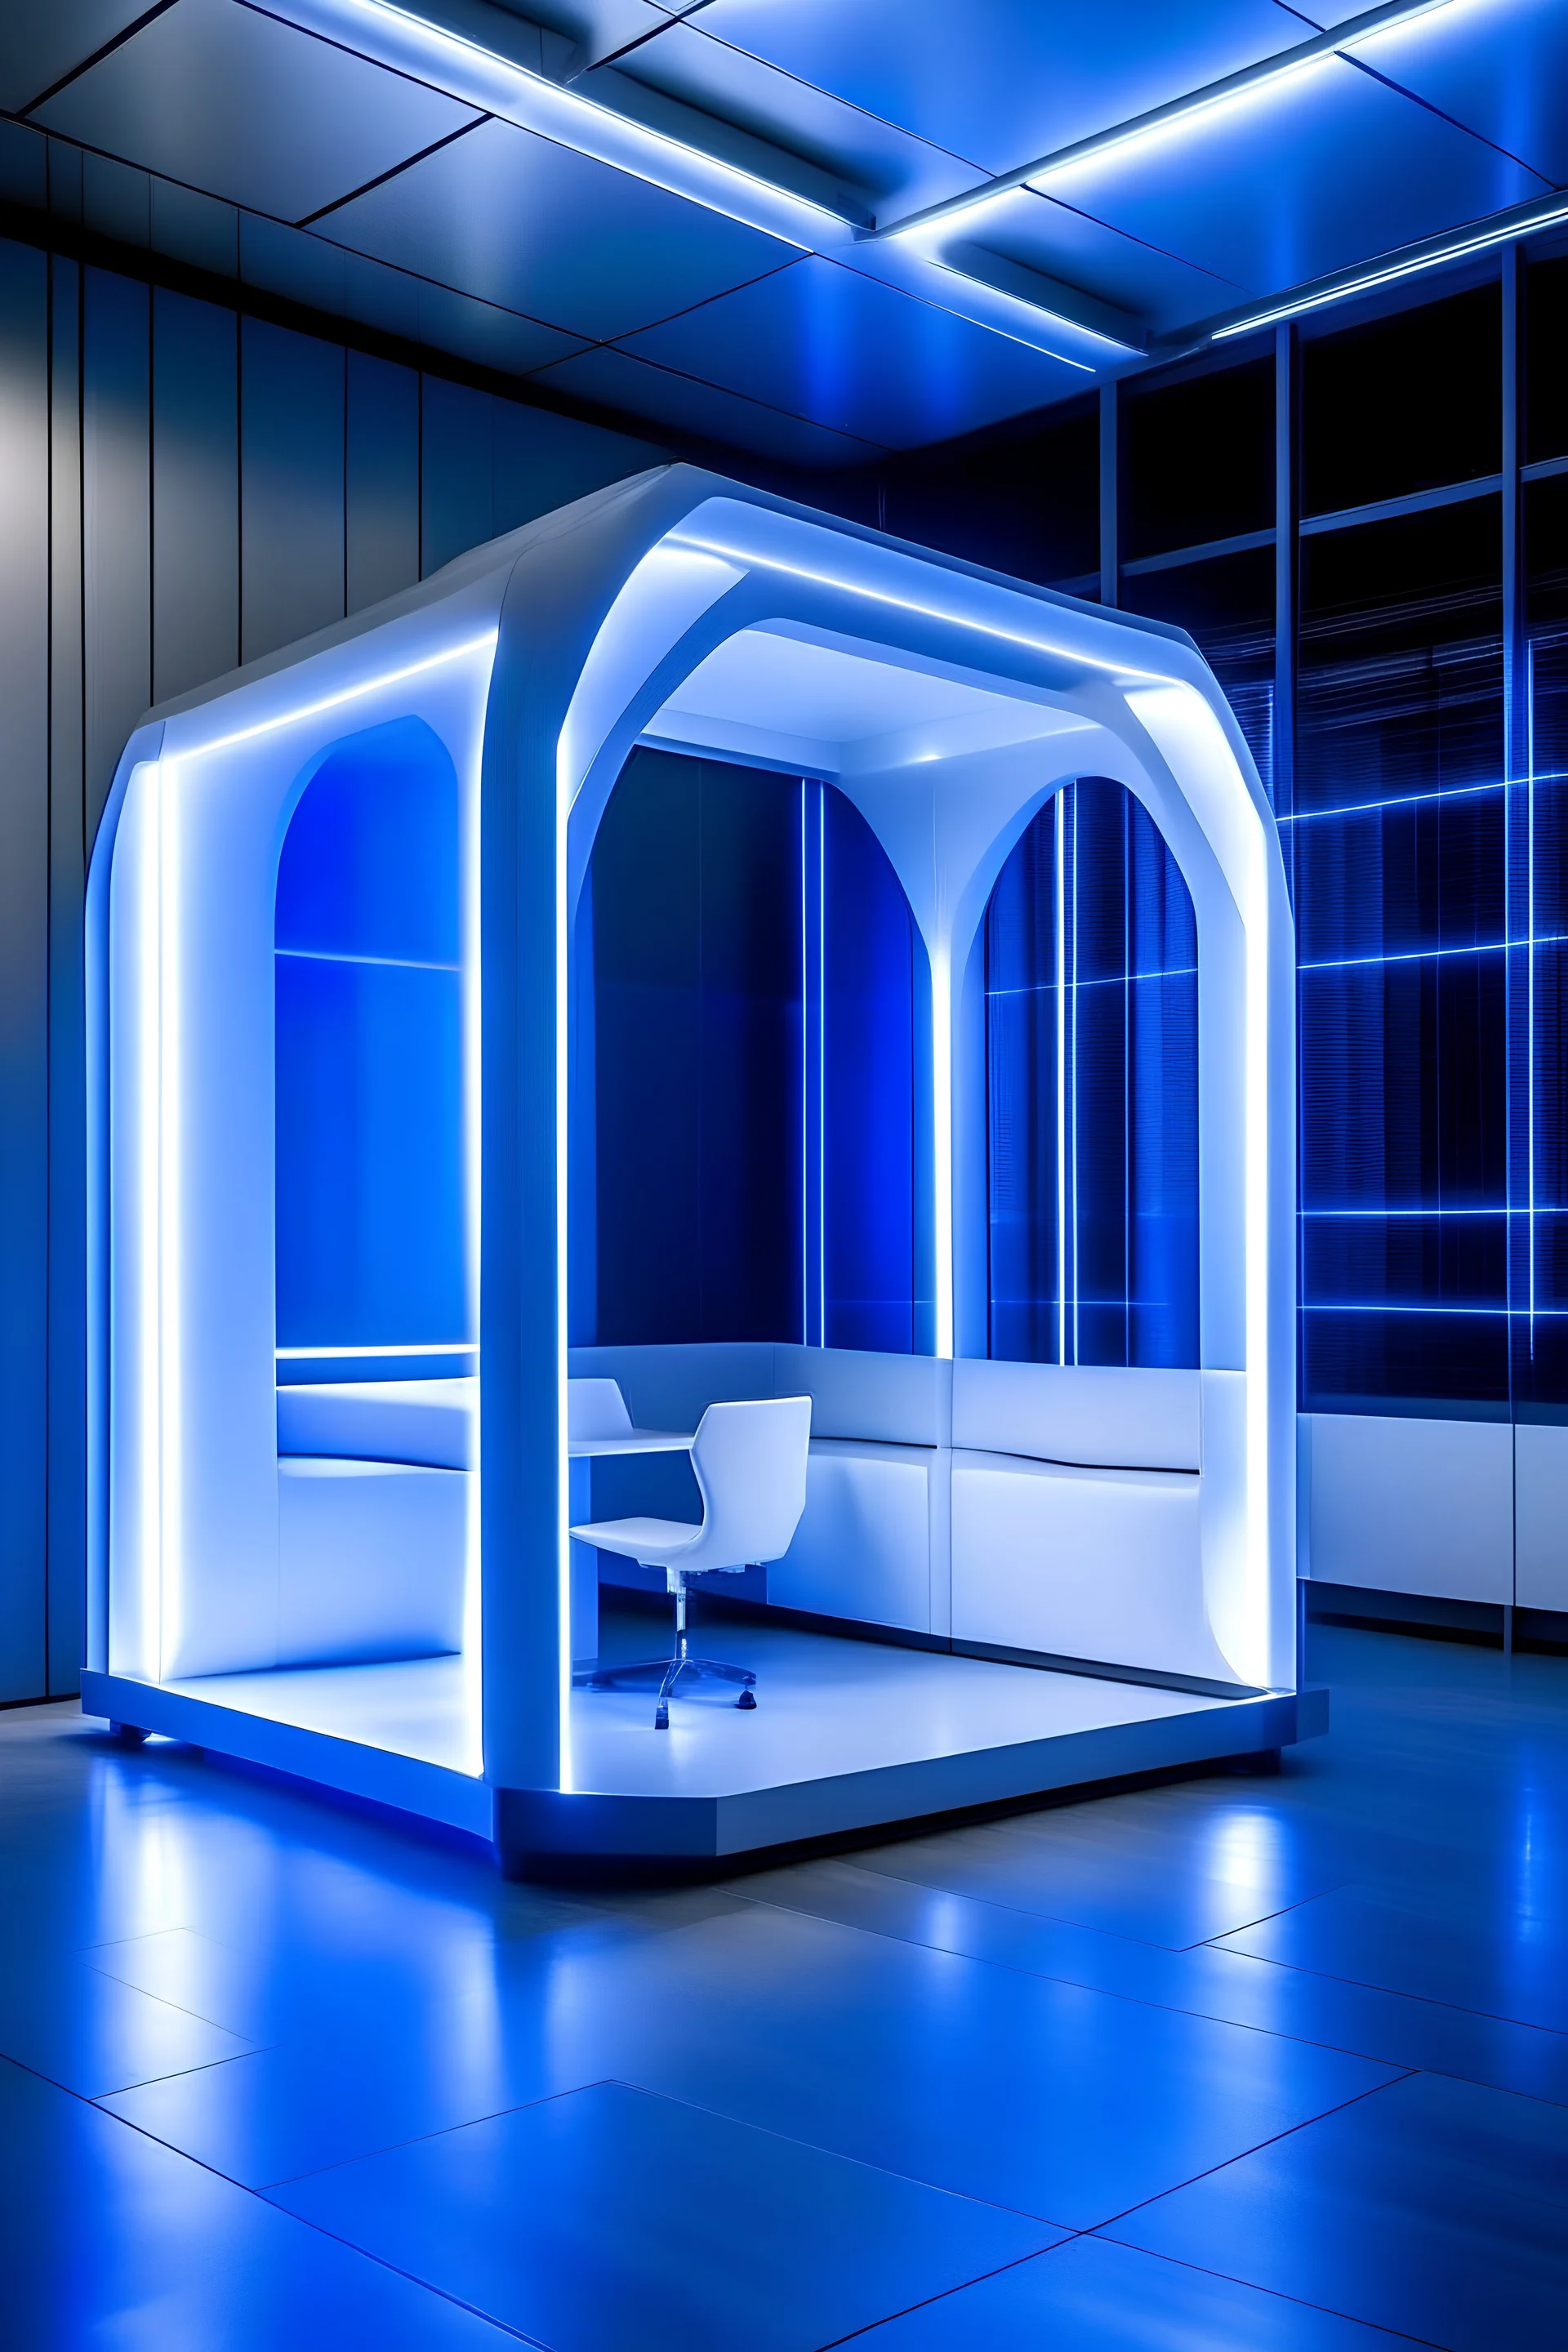 crea una cabina portátil por dentro de color blanca con ventanas transparentes y luces led de color azules en el techo que ambienten la cabina, dentro de la cabina abra solo 1 silla con un grado de inclinación de 45 grados